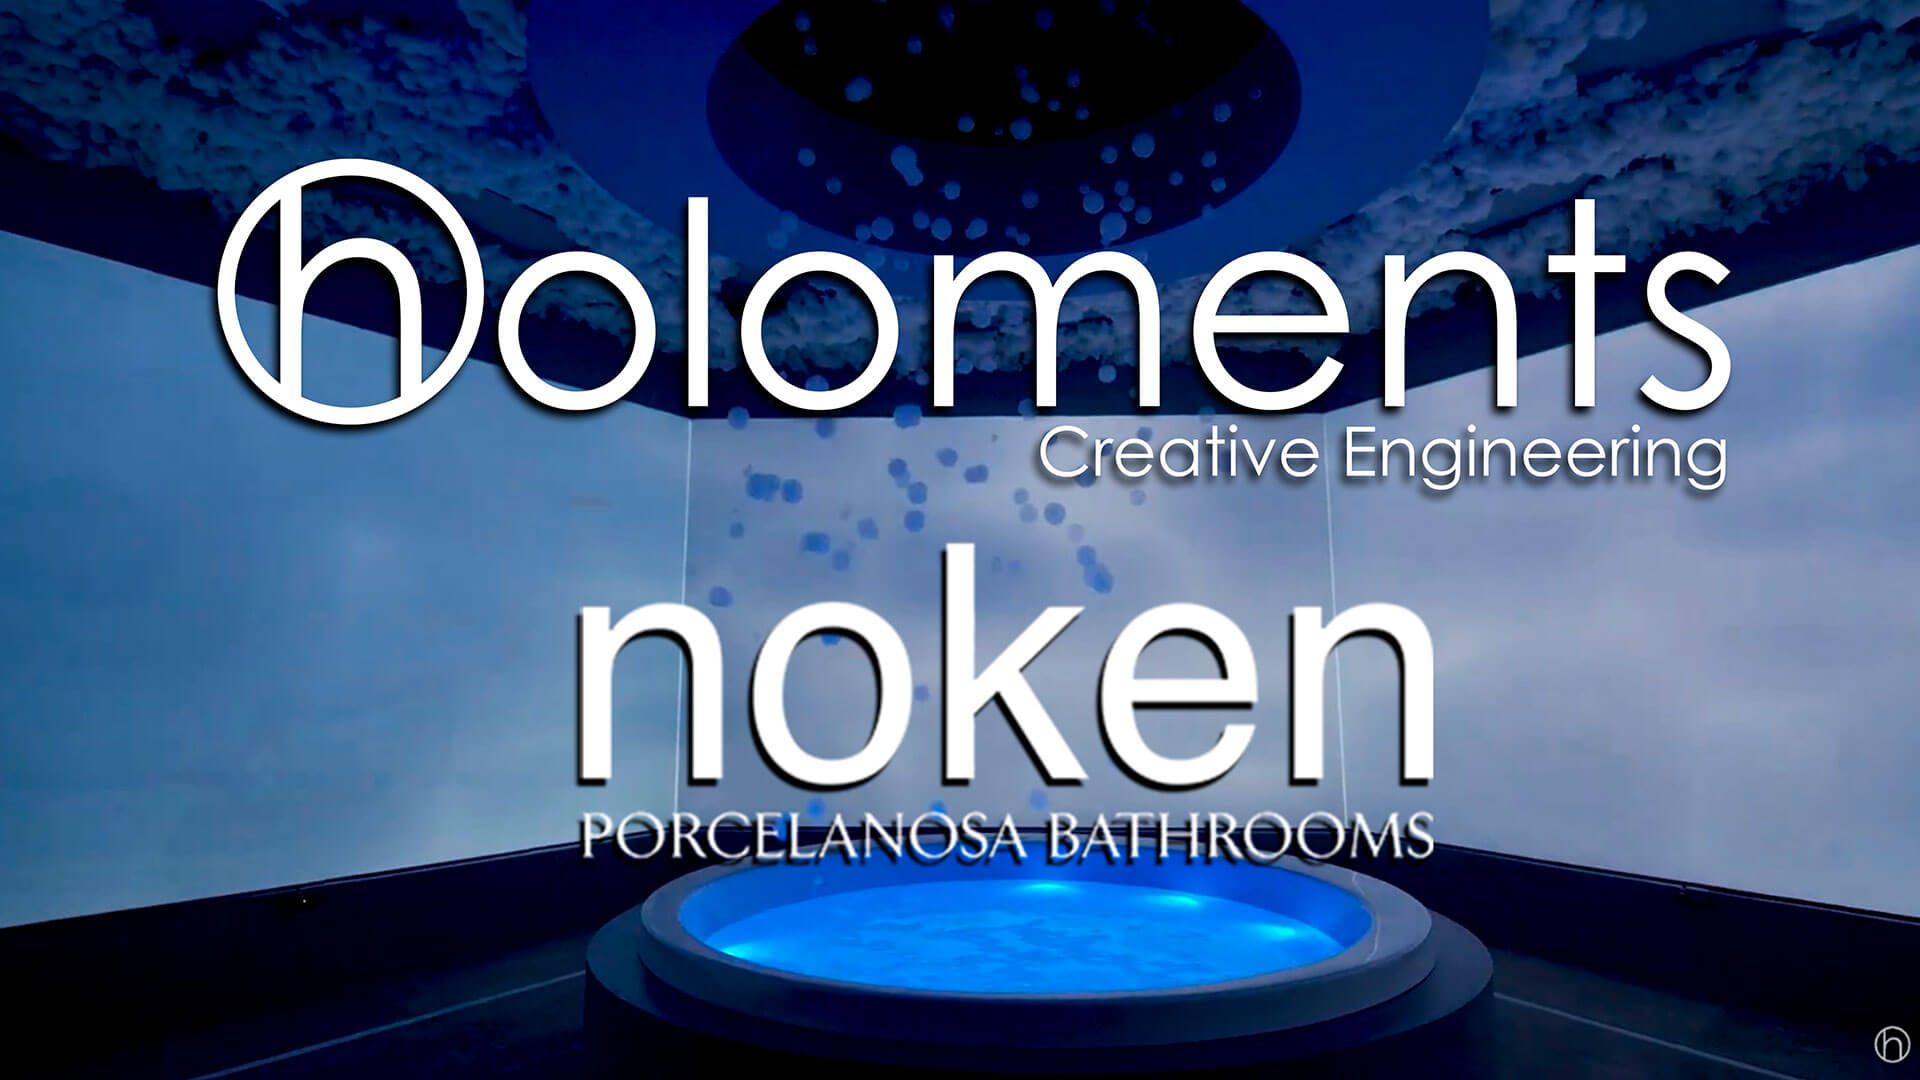 Showroom holoments noken porcelanosa hologramas Portada-holoments-noken-linkedin-1080p